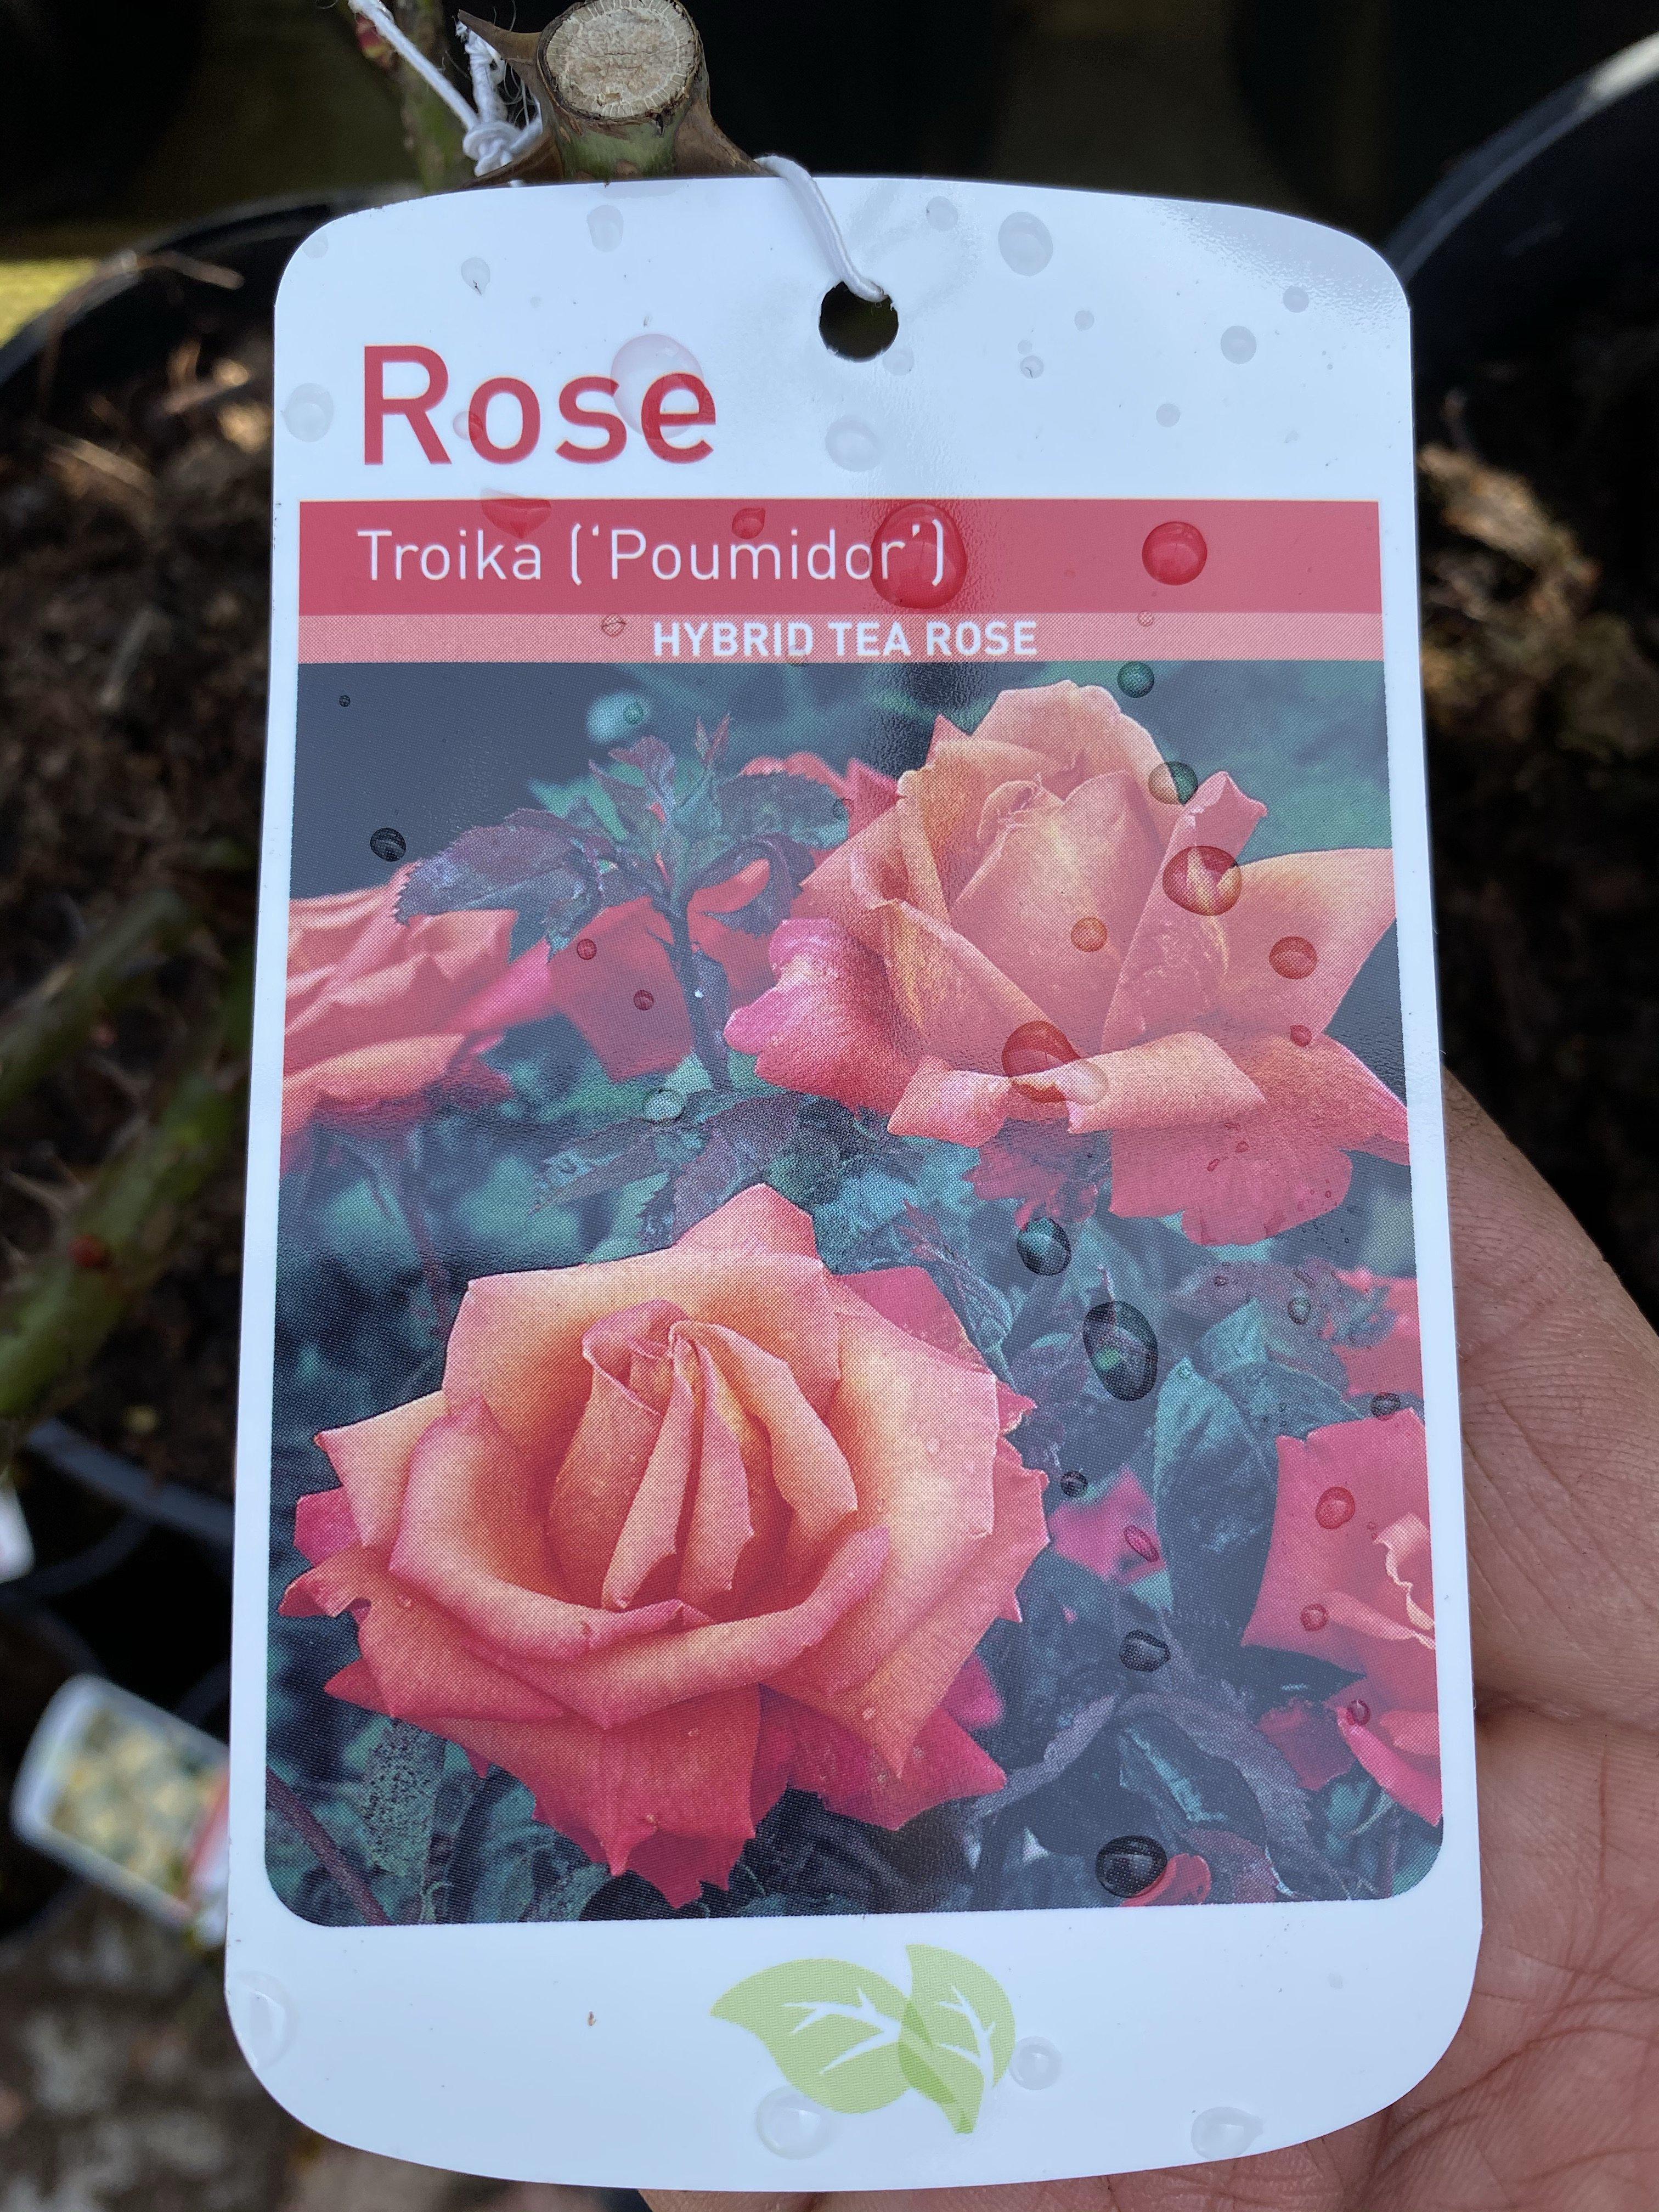 Rose “Troika”